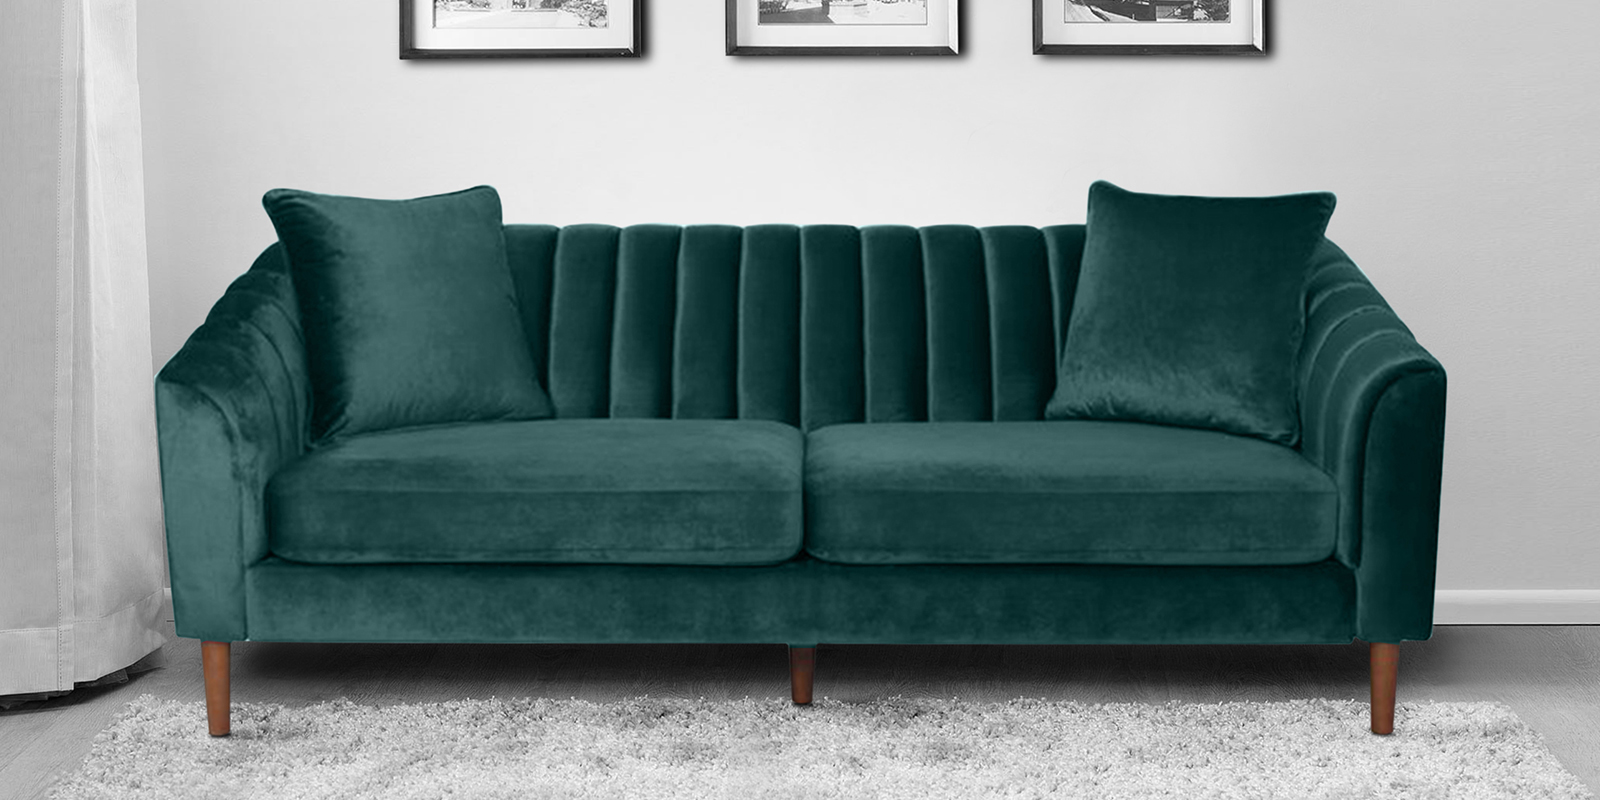 Effervescent Velvet 3 Seater Sofa in Green Colour - Dreamzz ...